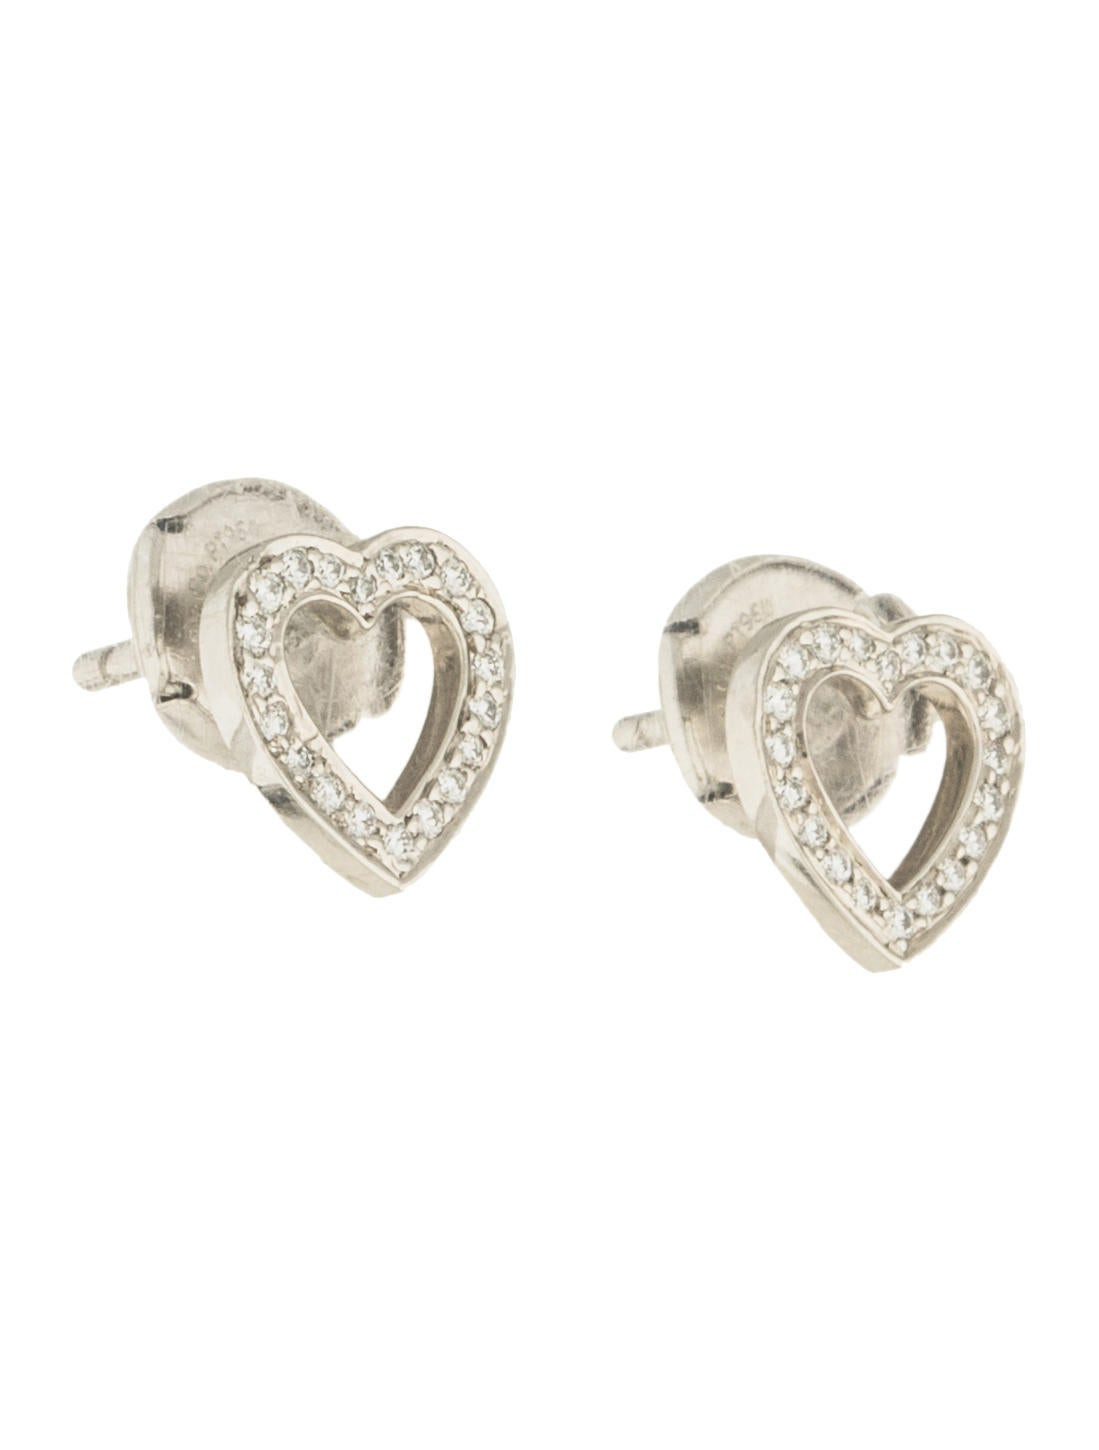 Tiffany Diamond Stud Earrings
 Tiffany & Co Platinum Diamond Heart Stud Earrings